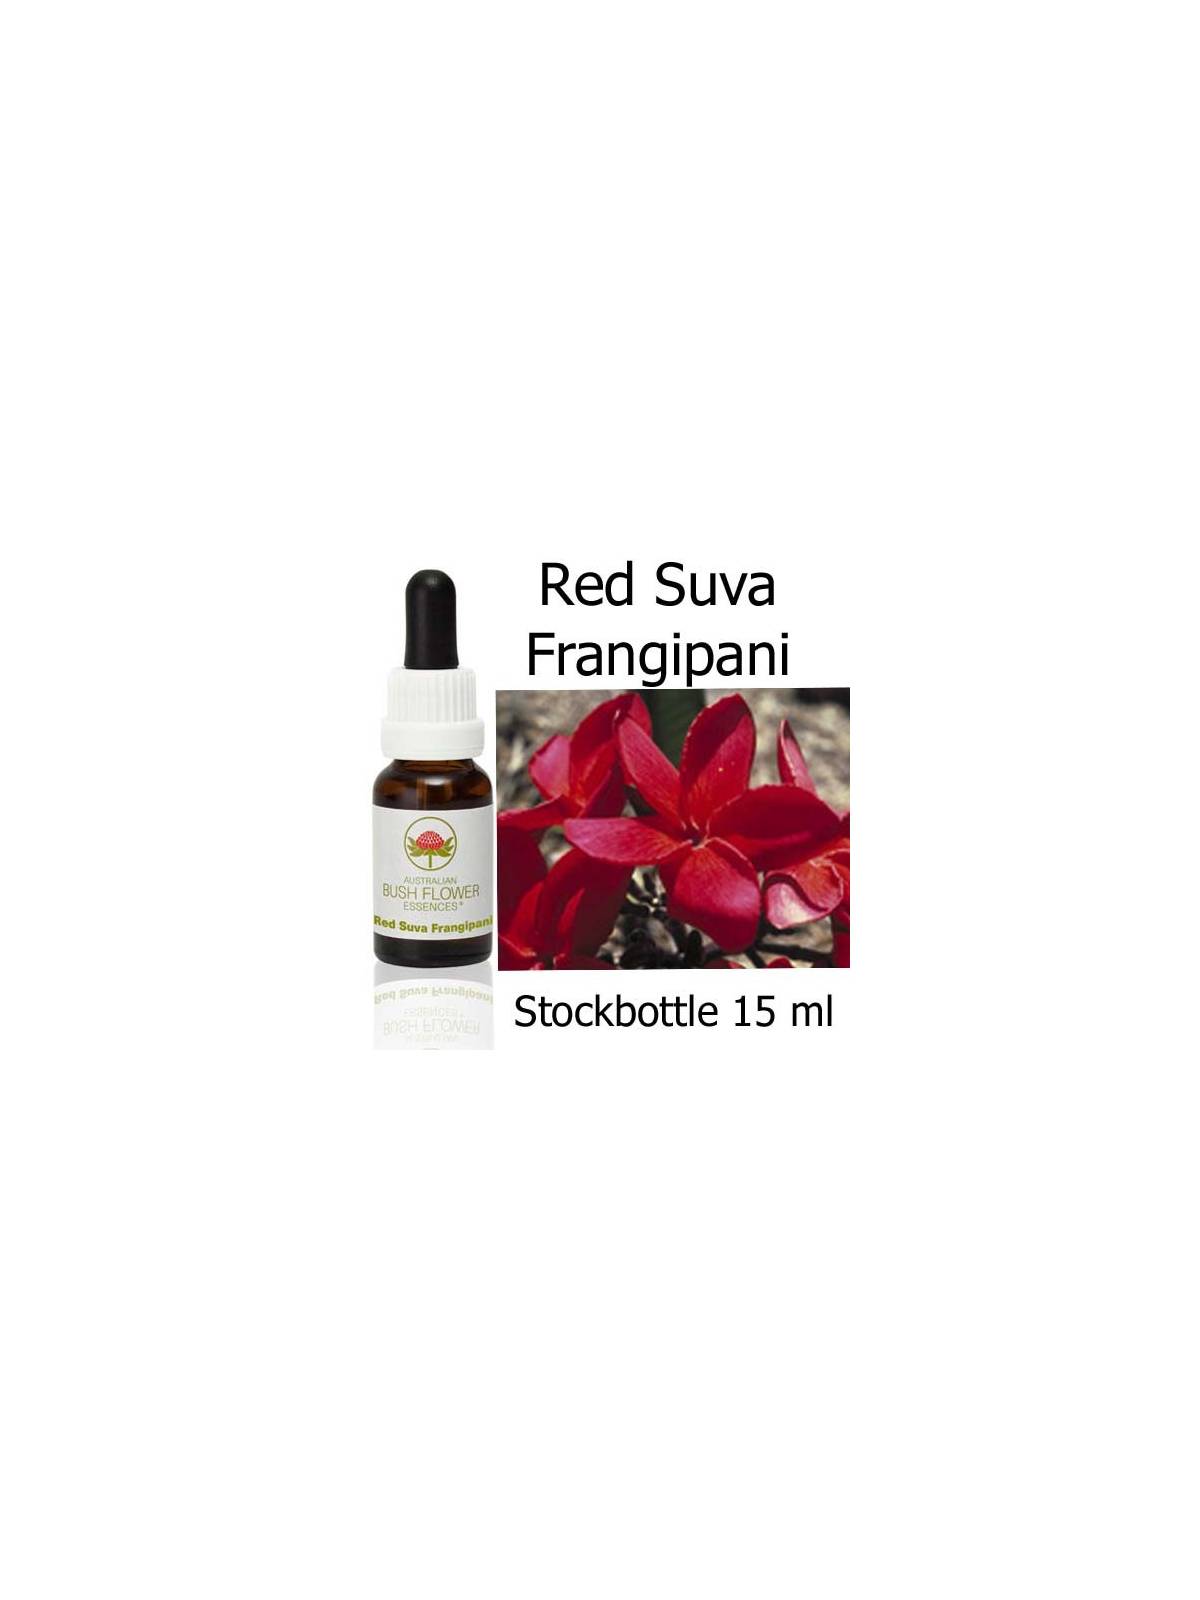 Red Suva Frangipani Australian Bush Flower Essences stockbottles